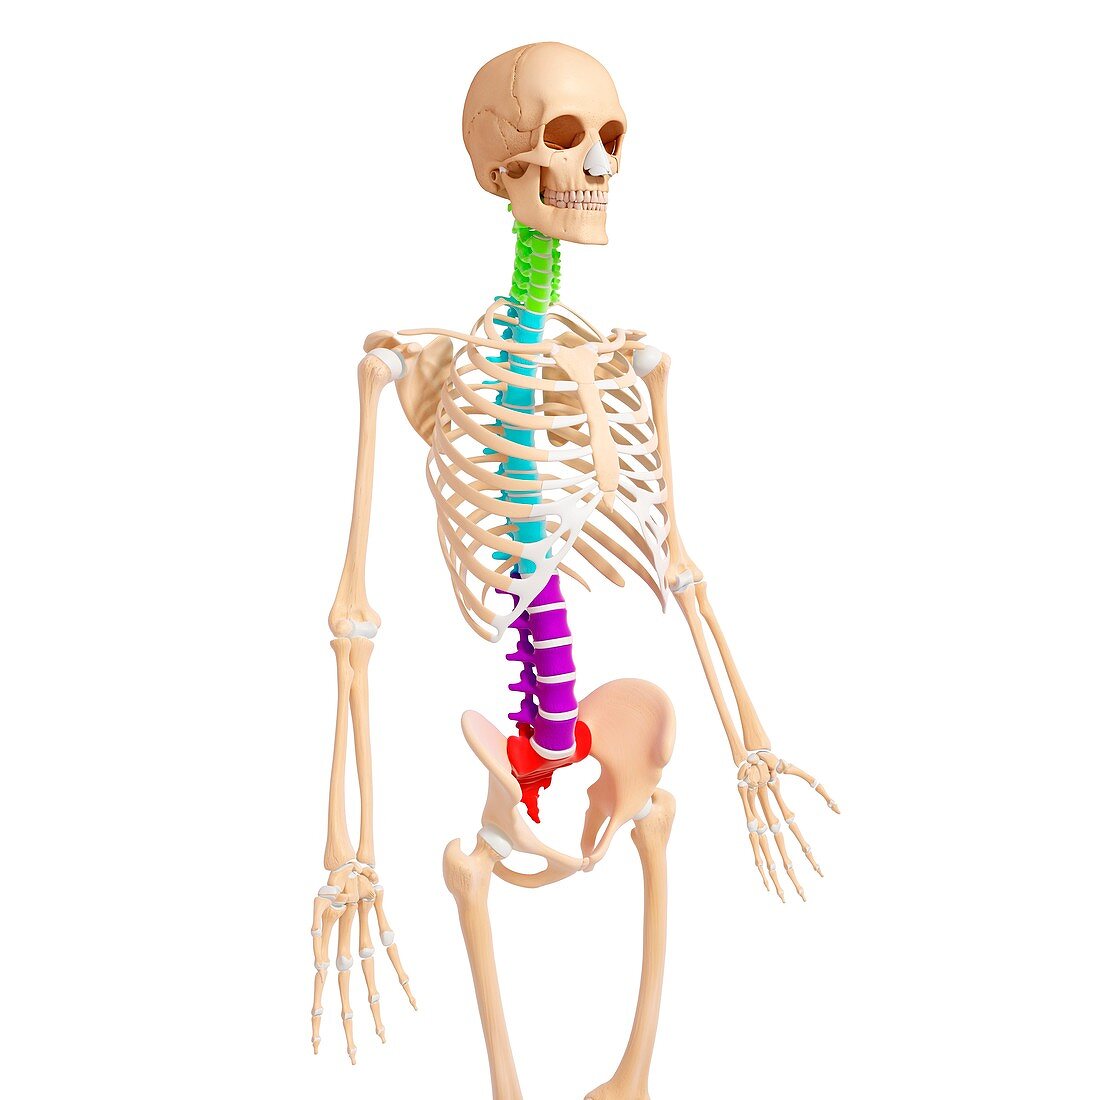 Human skeleton,artwork